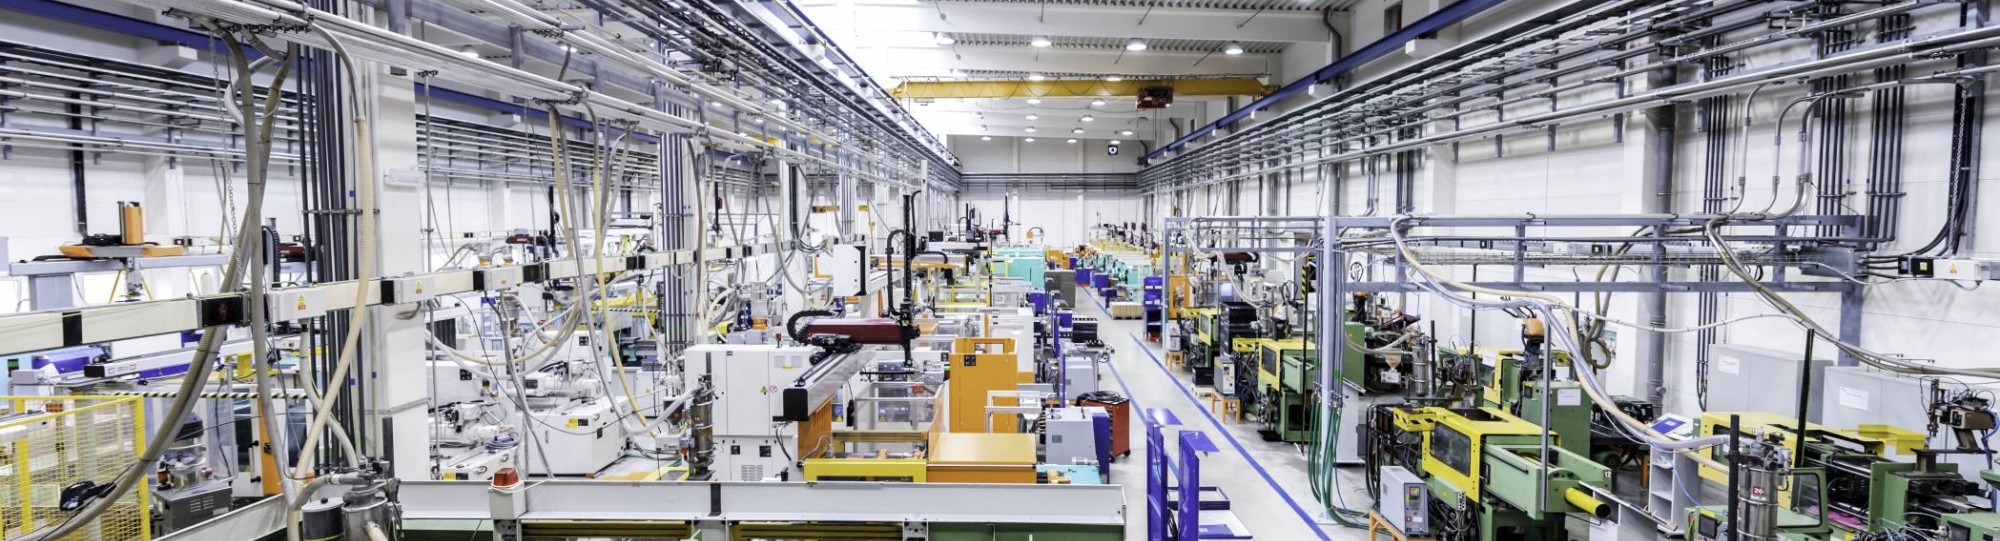 387446 Productievloer in fabriek met robots